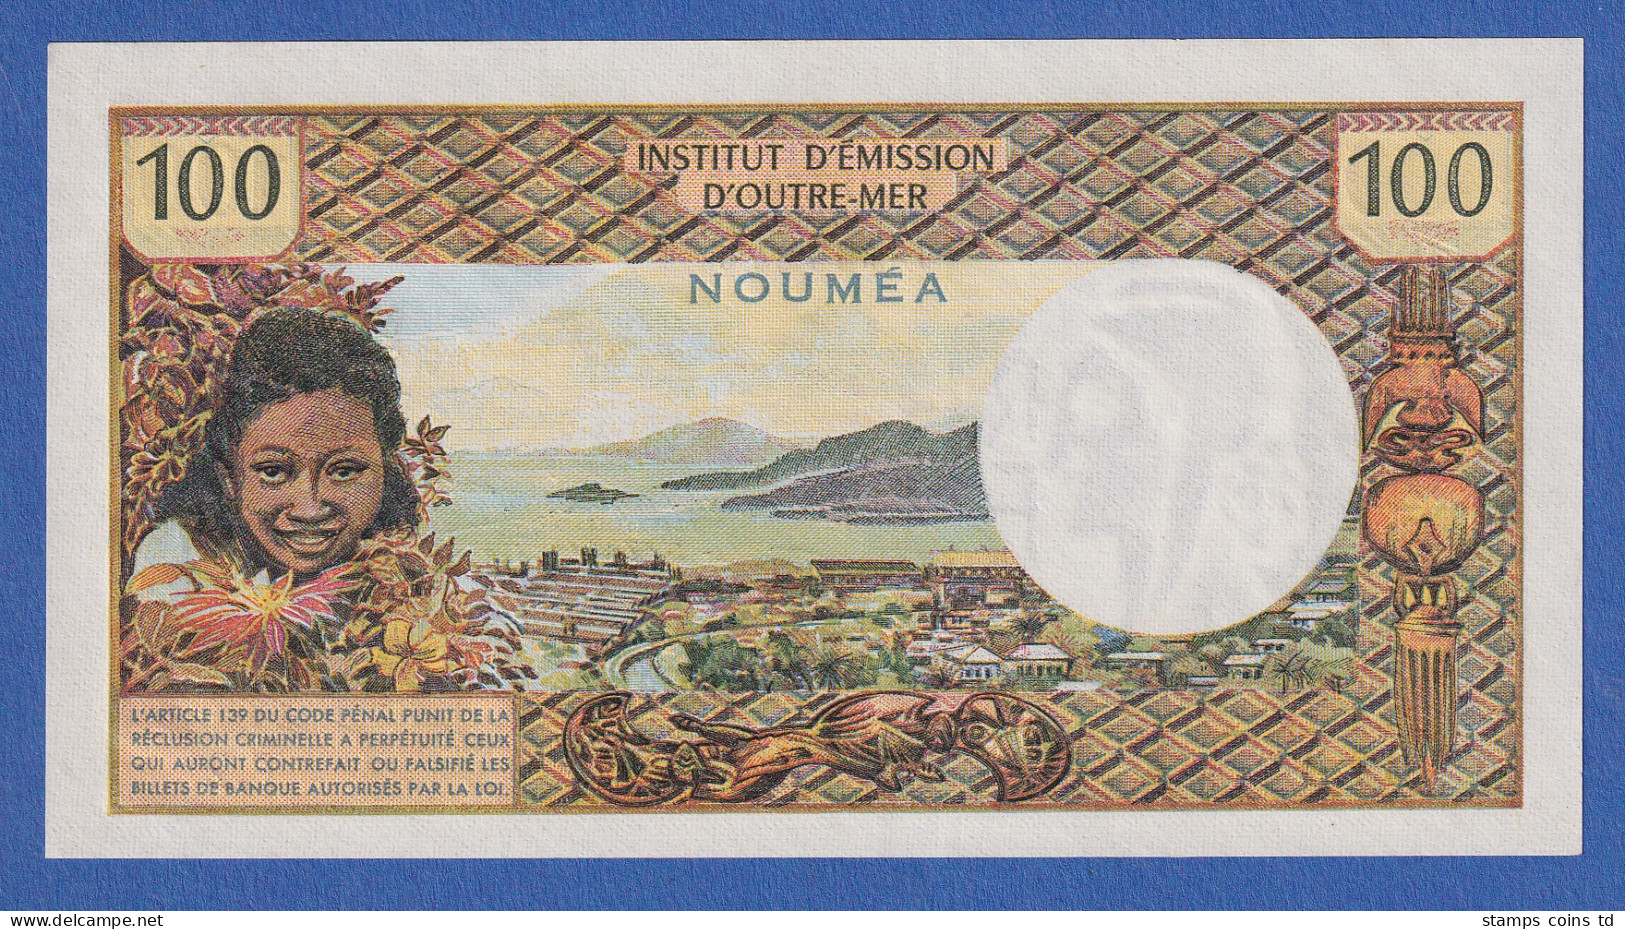 Frankreich Übersee Noumea 1972 Banknote 100 Franc Bankfrisch, Unzirkuliert. - Sonstige – Ozeanien